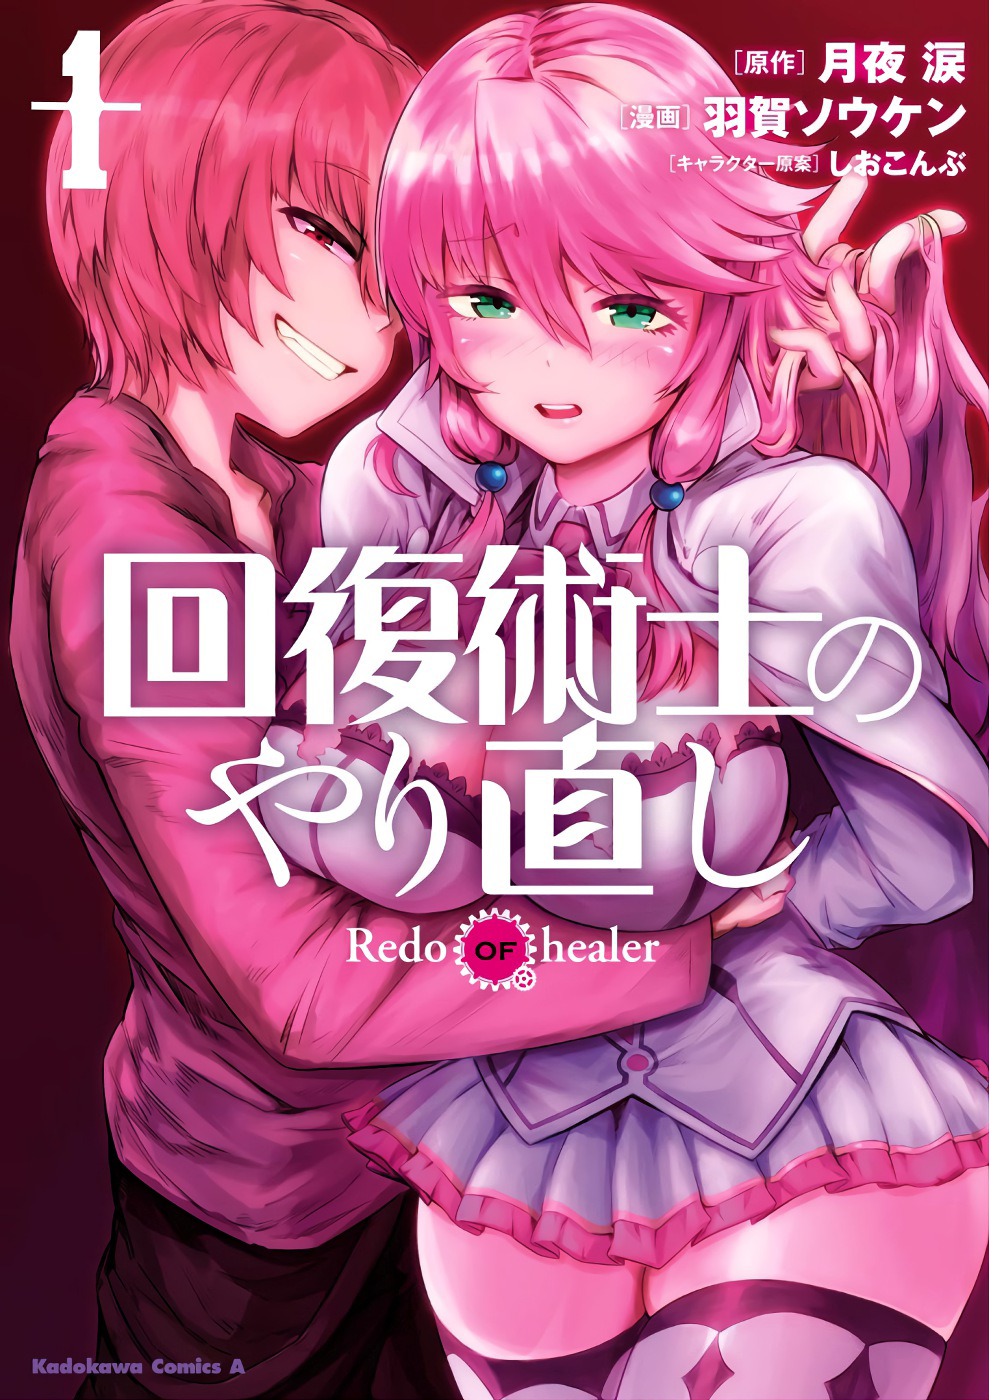 Kaifuku Jutsushi no Yarinaoshi - Redo of Healer (manga), Kaifuku Jutsushi  no Yarinaoshi Wiki